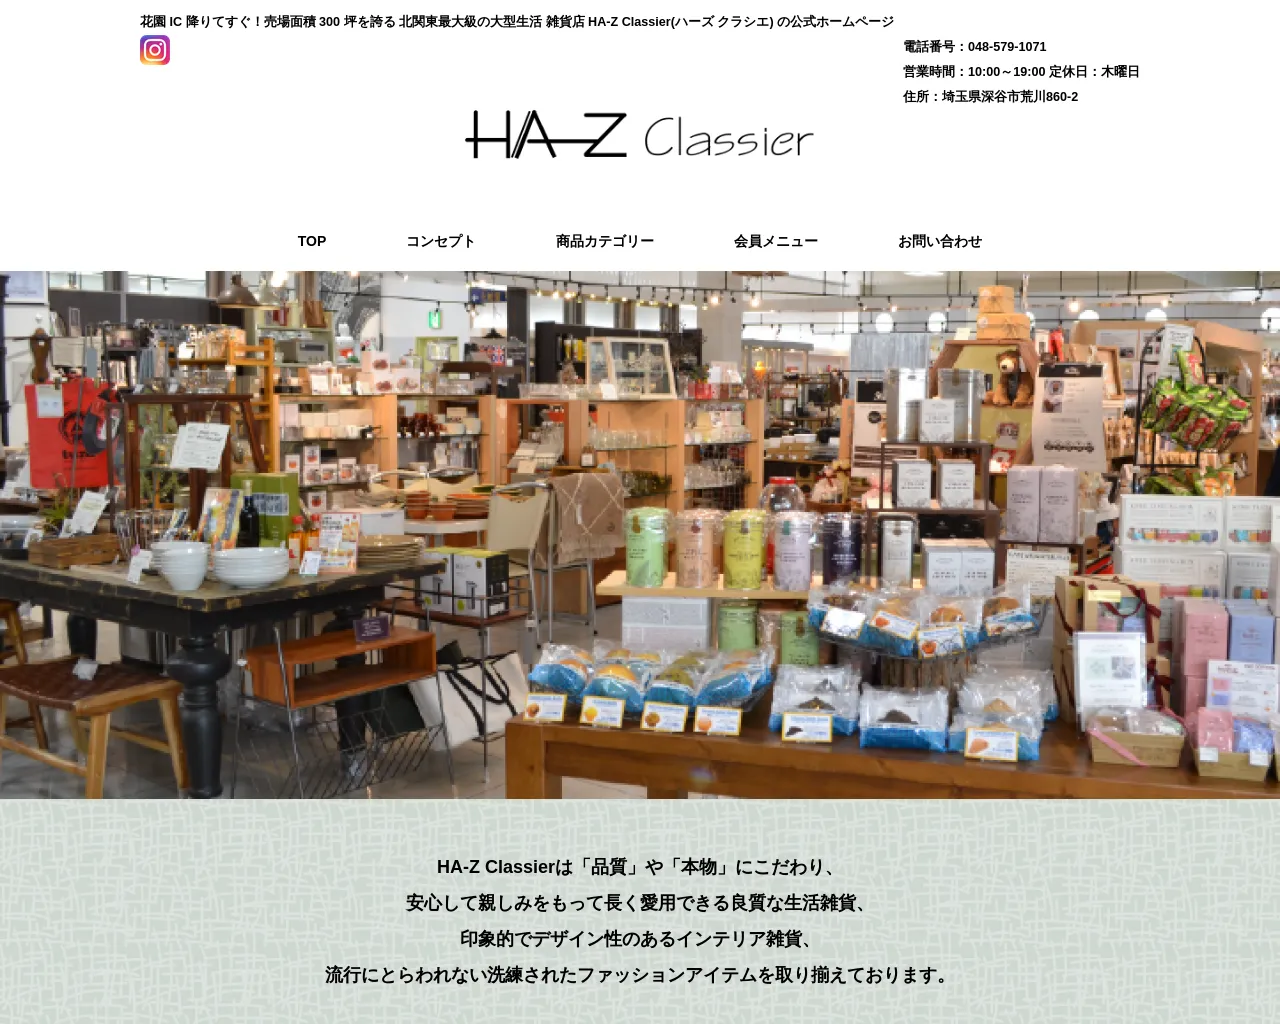 HA-Z Classier site